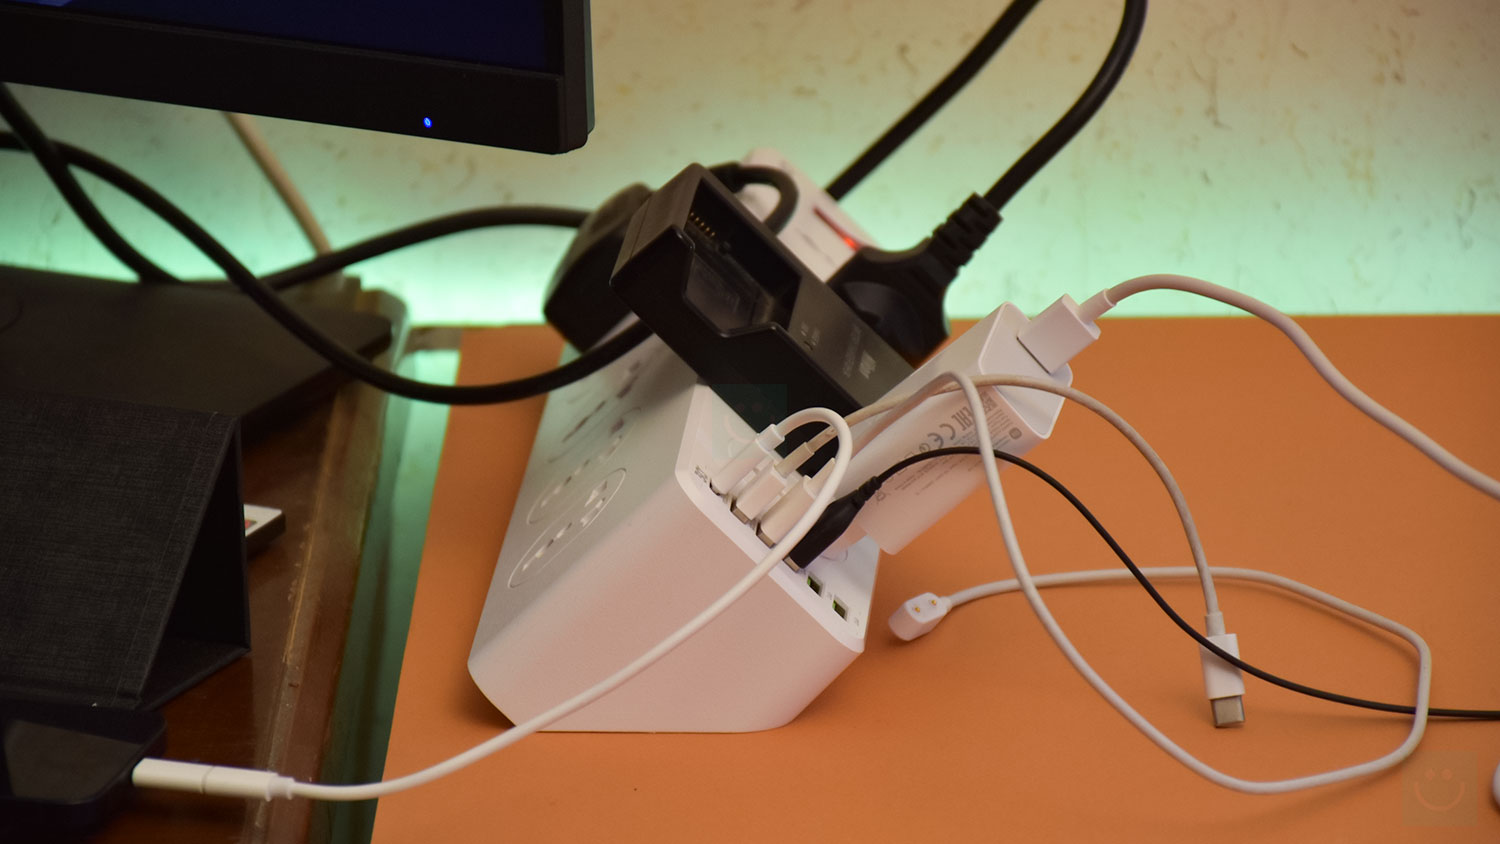 معرفی چندراهی برق Ldnio SC10610 : دارای خروجی USB C و ۵ عدد USB A به همراه ۱۰ پریز یونیورسال